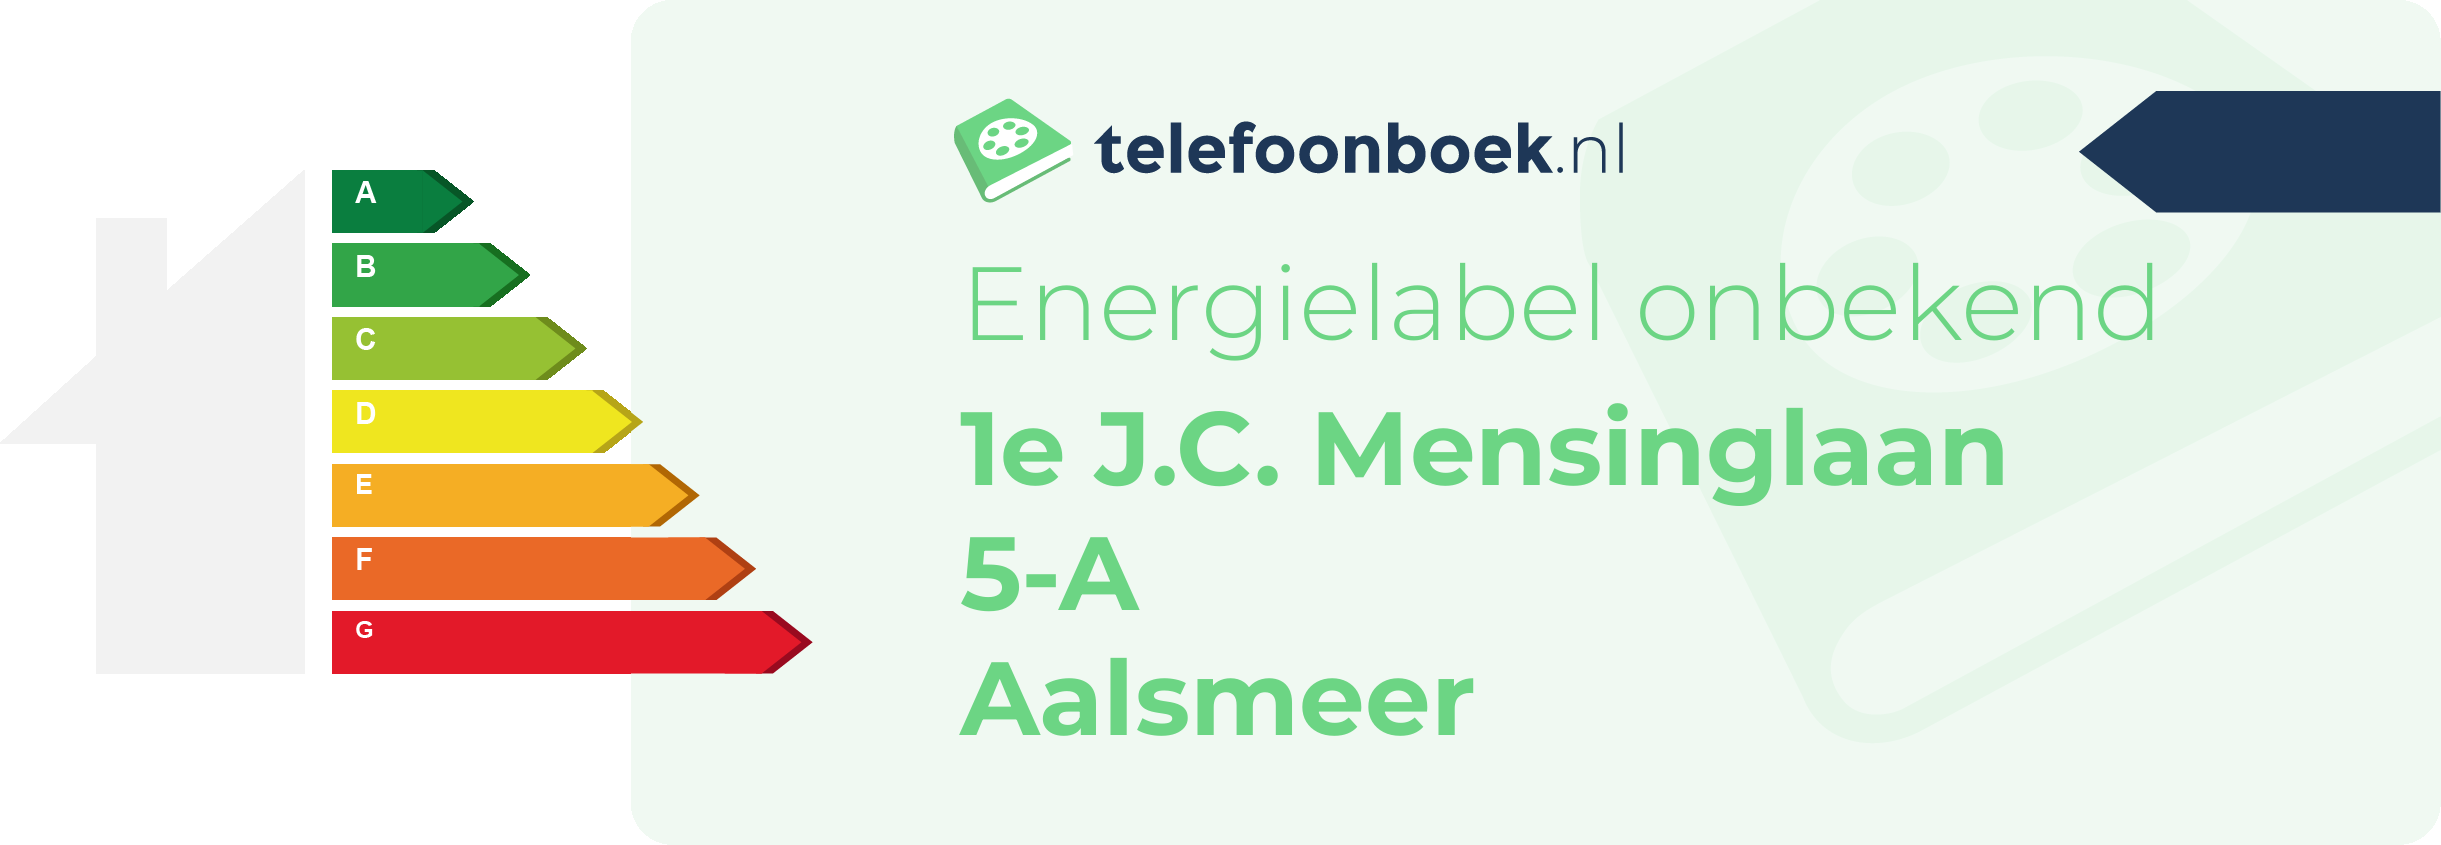 Energielabel 1e J.C. Mensinglaan 5-A Aalsmeer